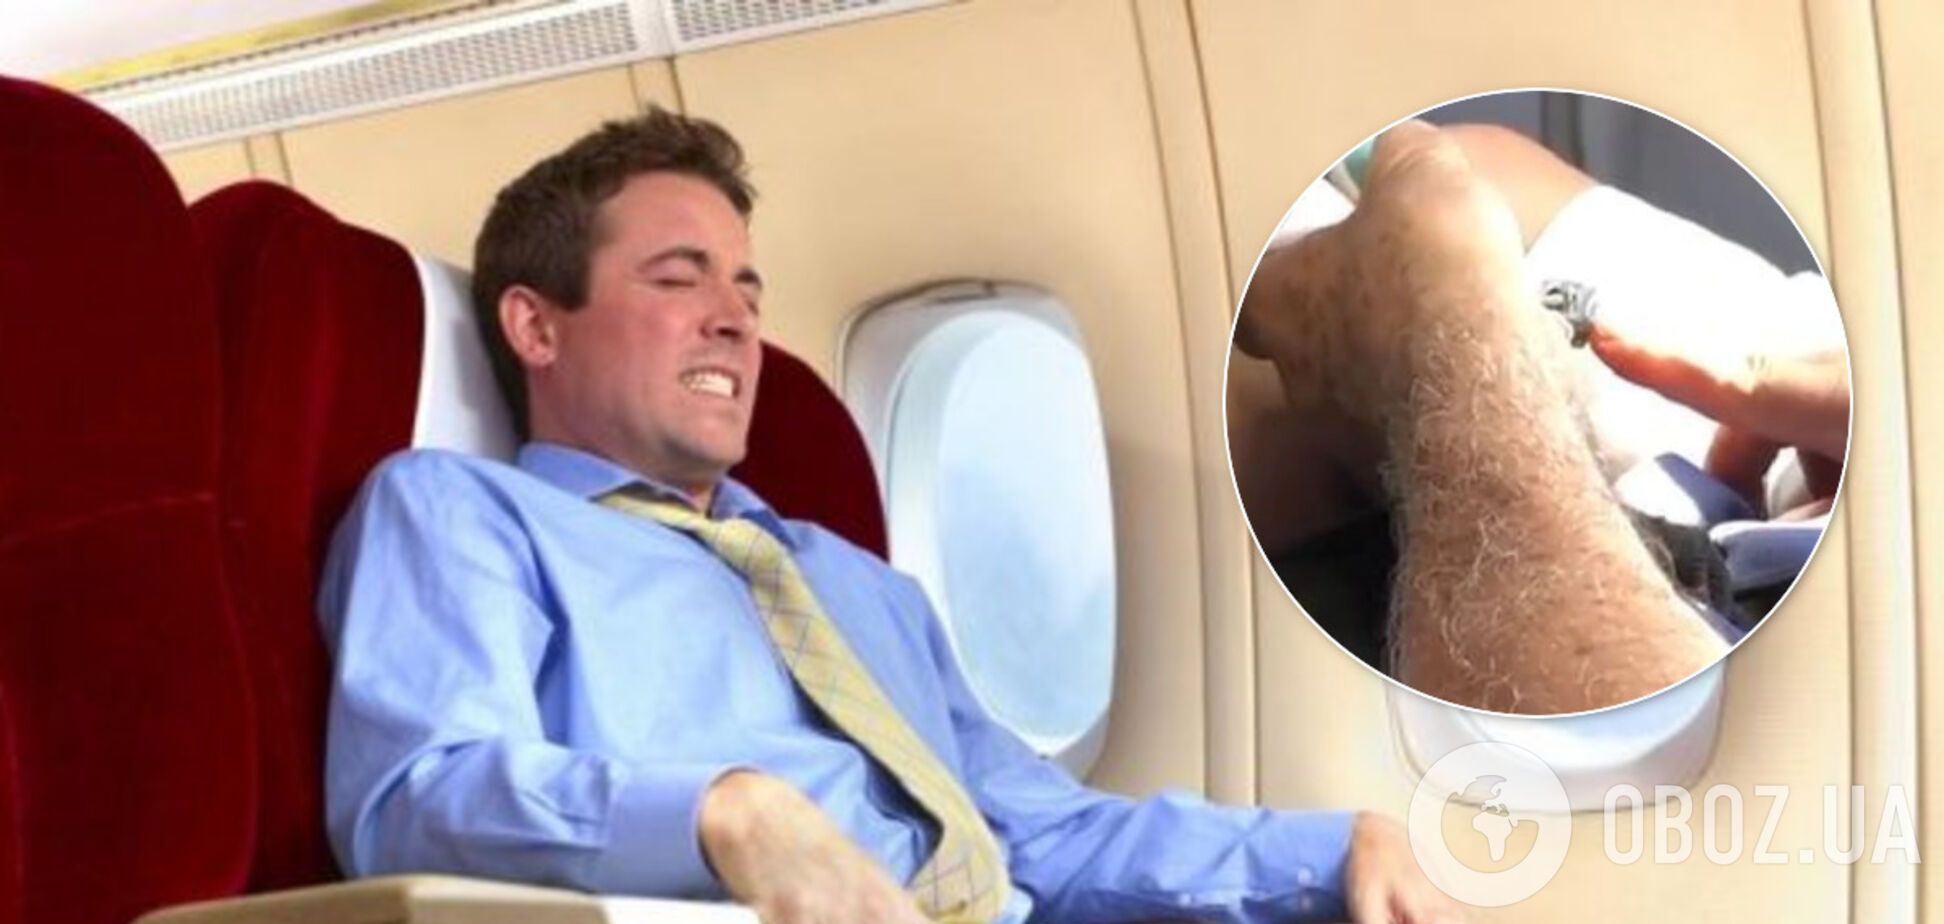 Подстригал ногти в самолете: мужчина вызвал омерзение у попутчиков